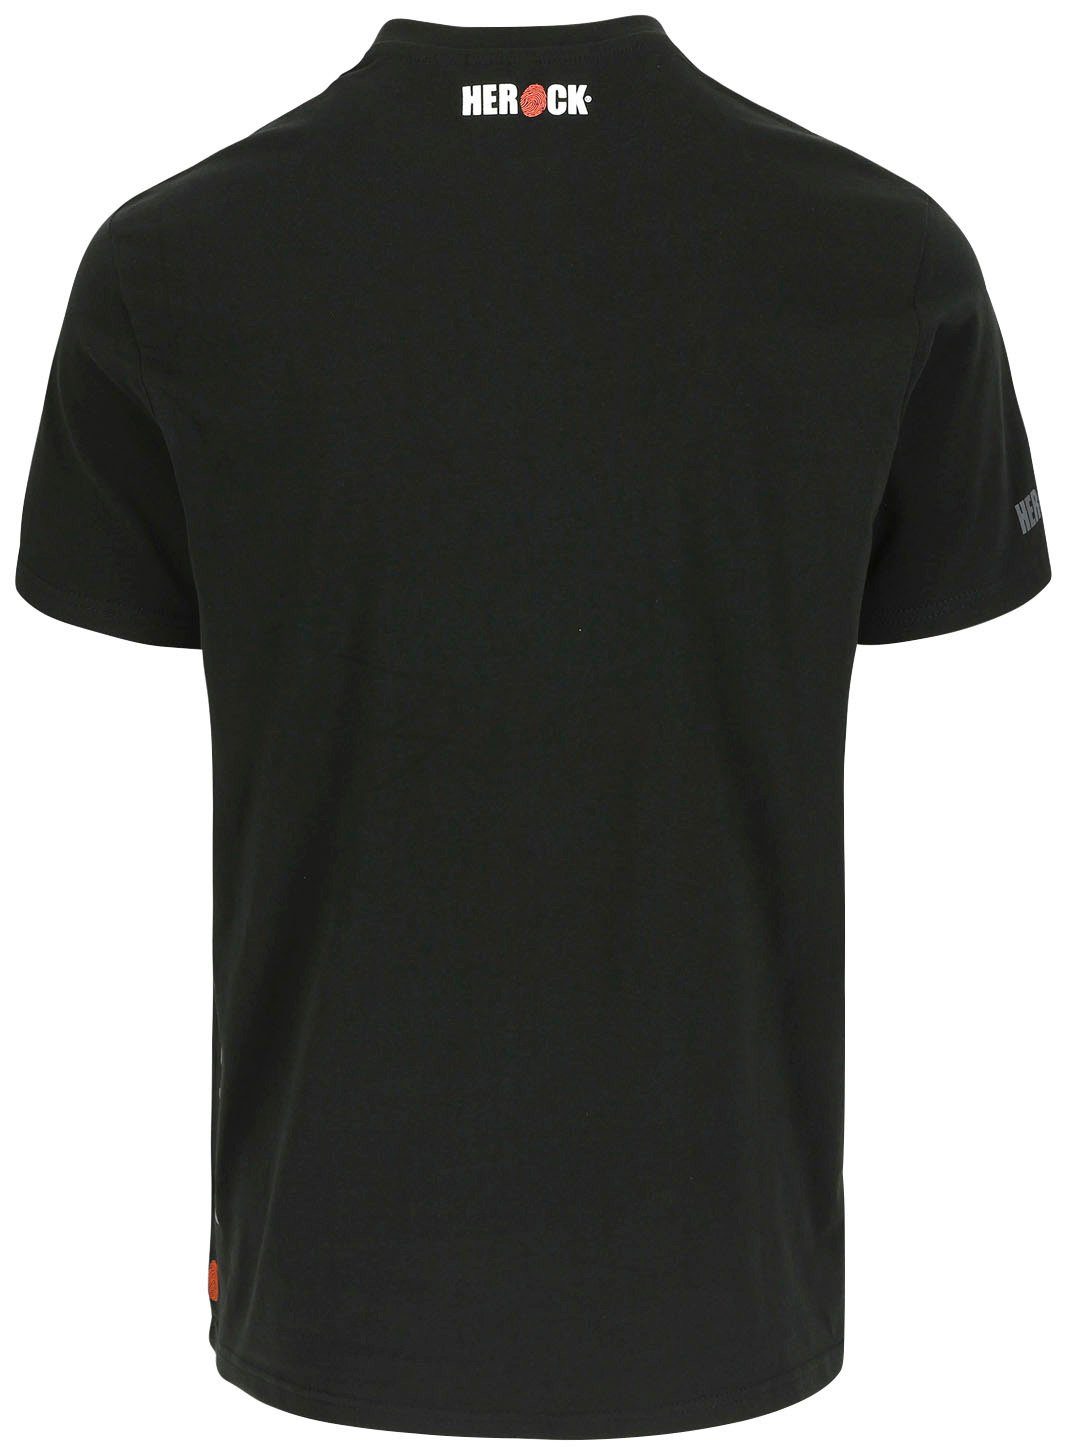 Herock®-Aufdruck, Ärmel, Rundhalsausschnitt, schwarz Callius Herock T-Shirt Ärmel kurze Rippstrickkragen T-Shirt kurze